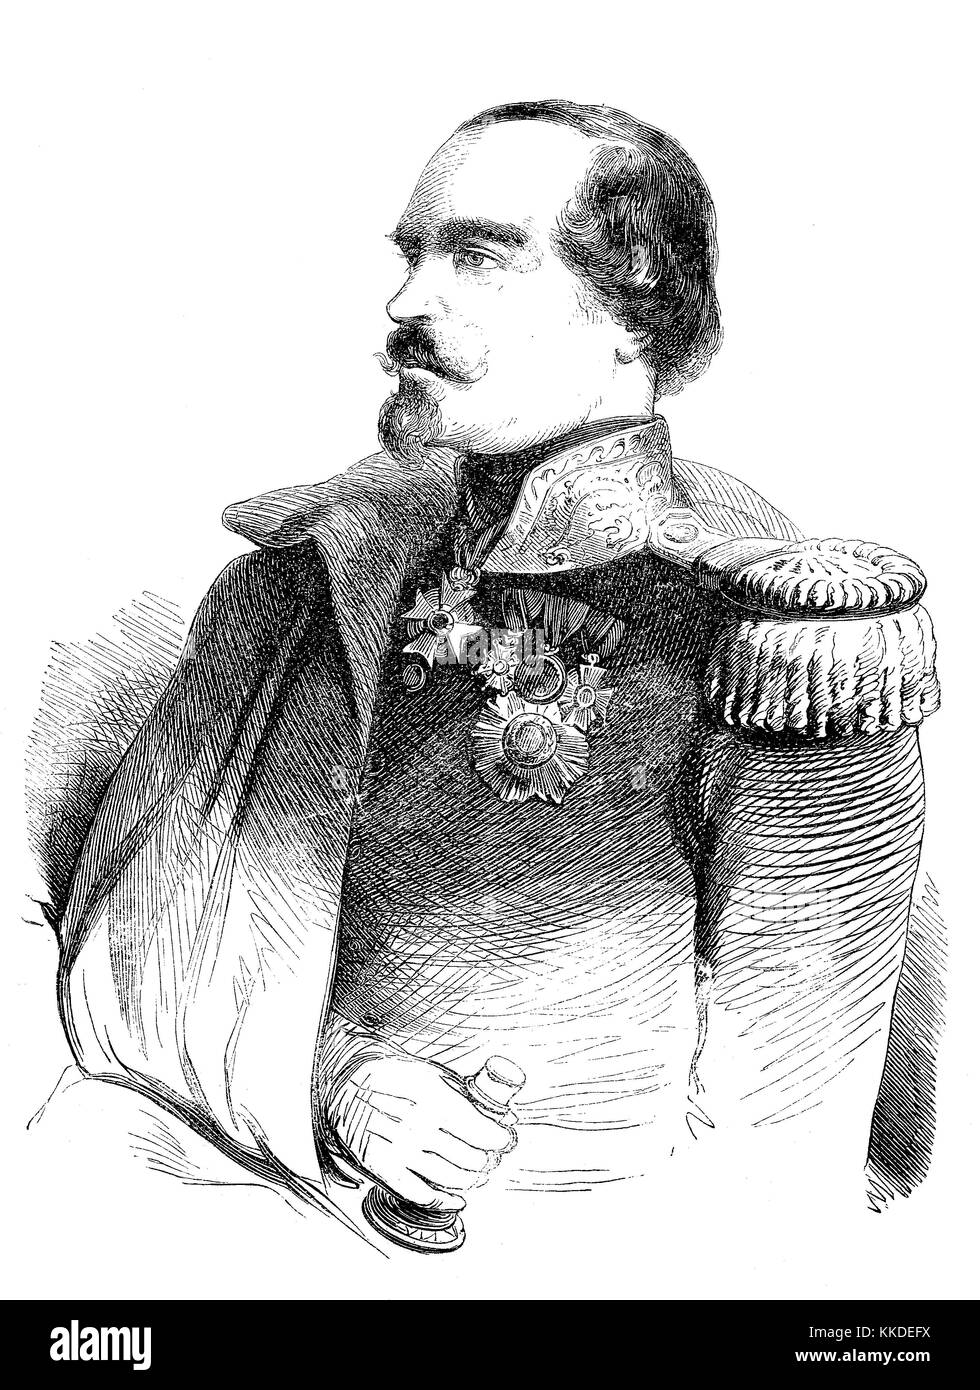 Francois-Marcellin Bestimmte de Canrobert, 27. Juni 1809 bis zum 28. Januar 1895, war ein französischer Marschall, Bilder aus der Zeit von 1855, Digital verbesserte Reproduktion eines original Holzschnitt Stockfoto